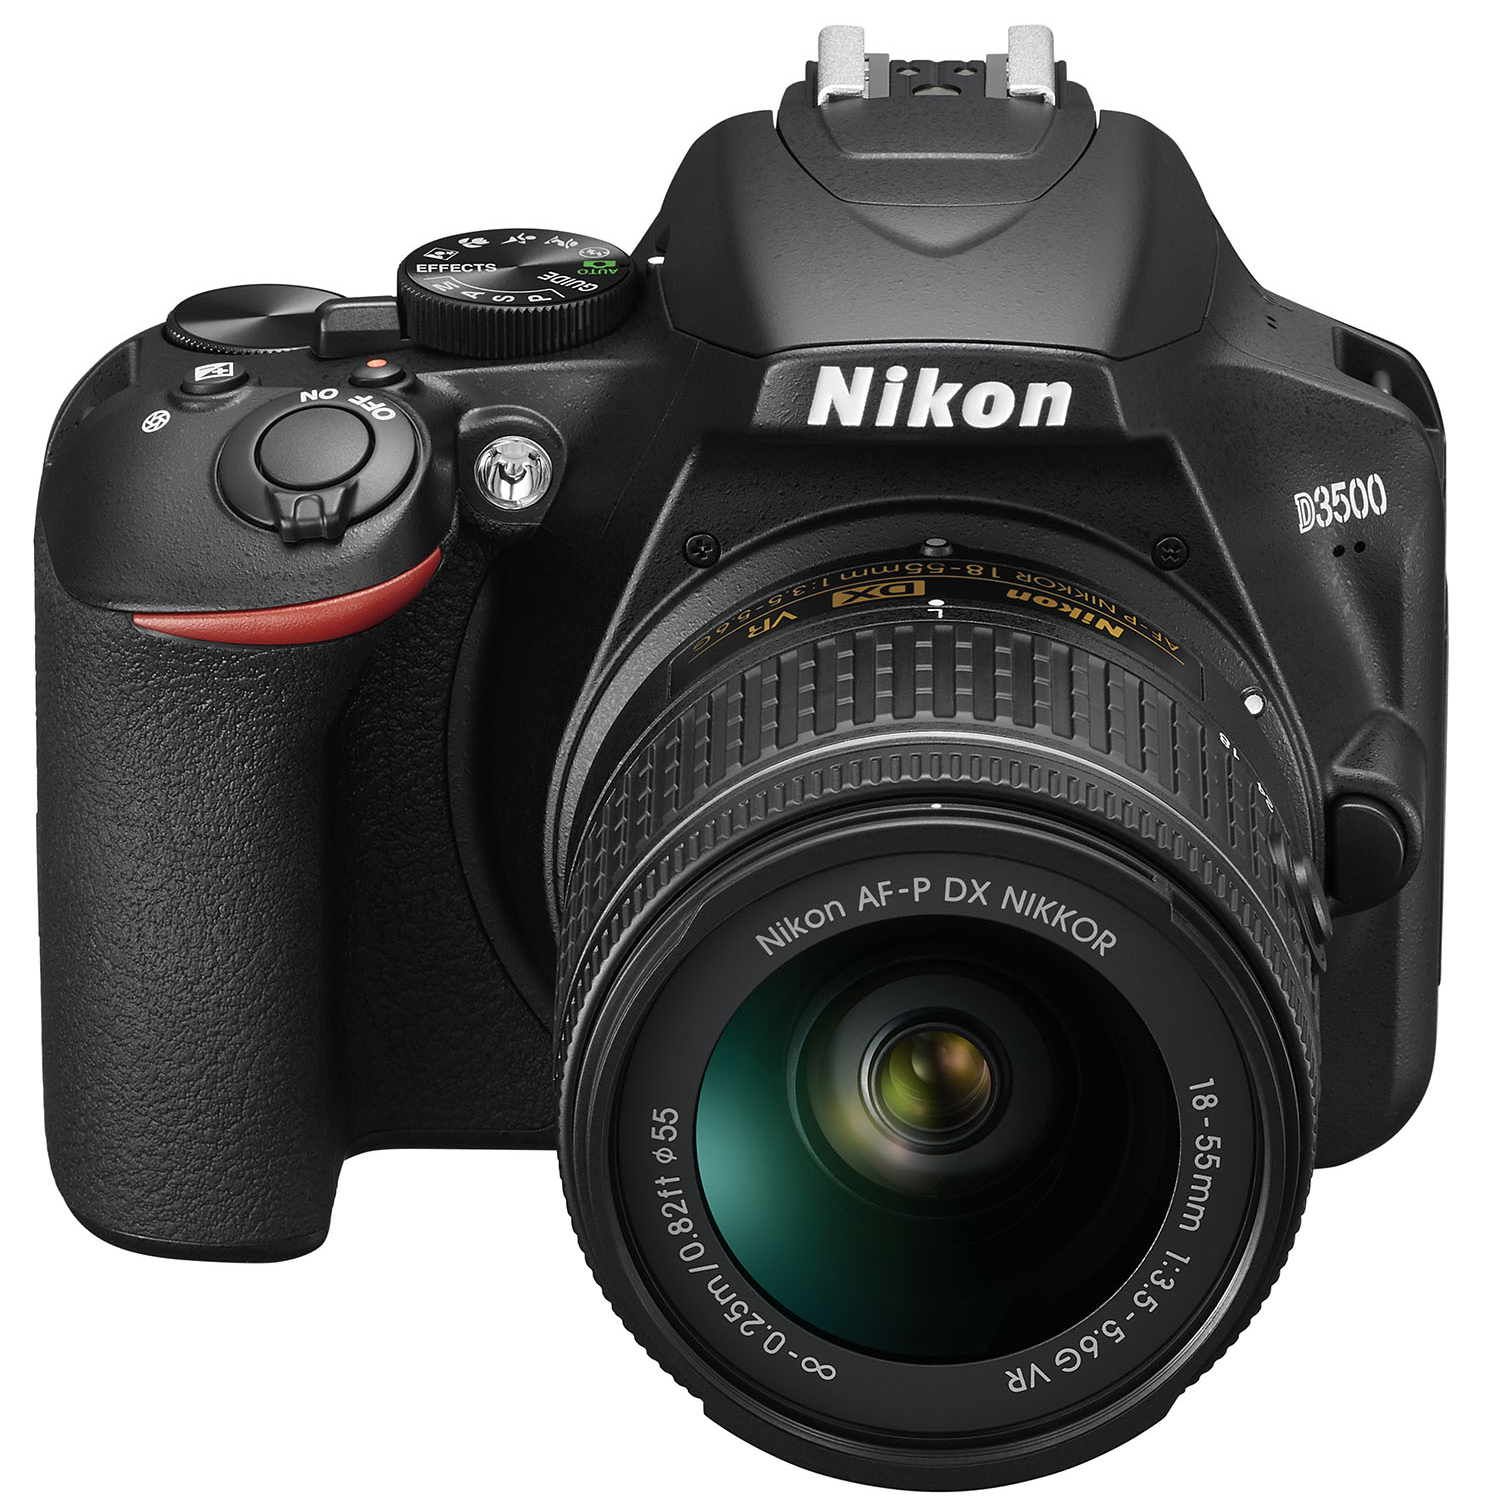 Nikon D3500 W/ AF-P DX Nikkor 18-55mm f/3.5-5.6G VR Black - image 2 of 10